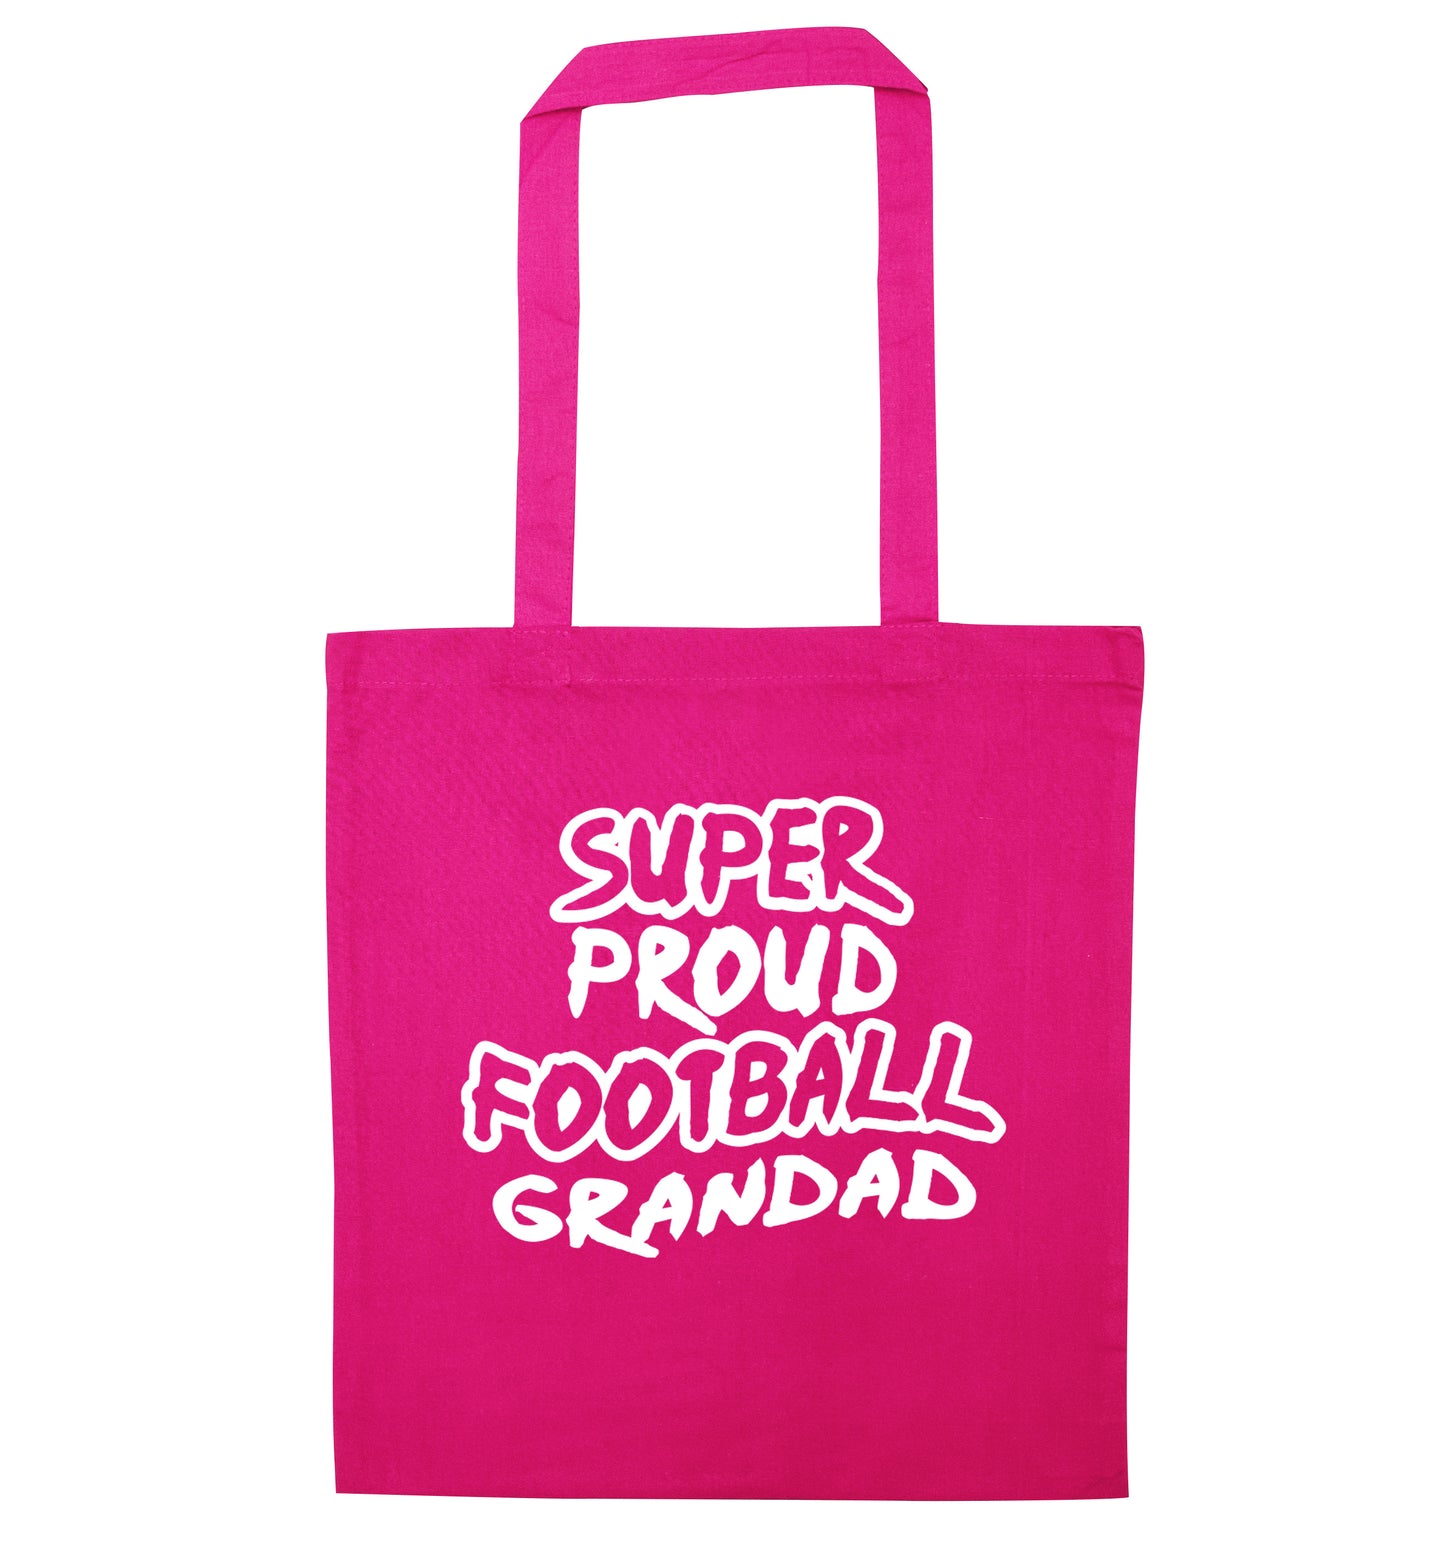 Super proud football grandad pink tote bag